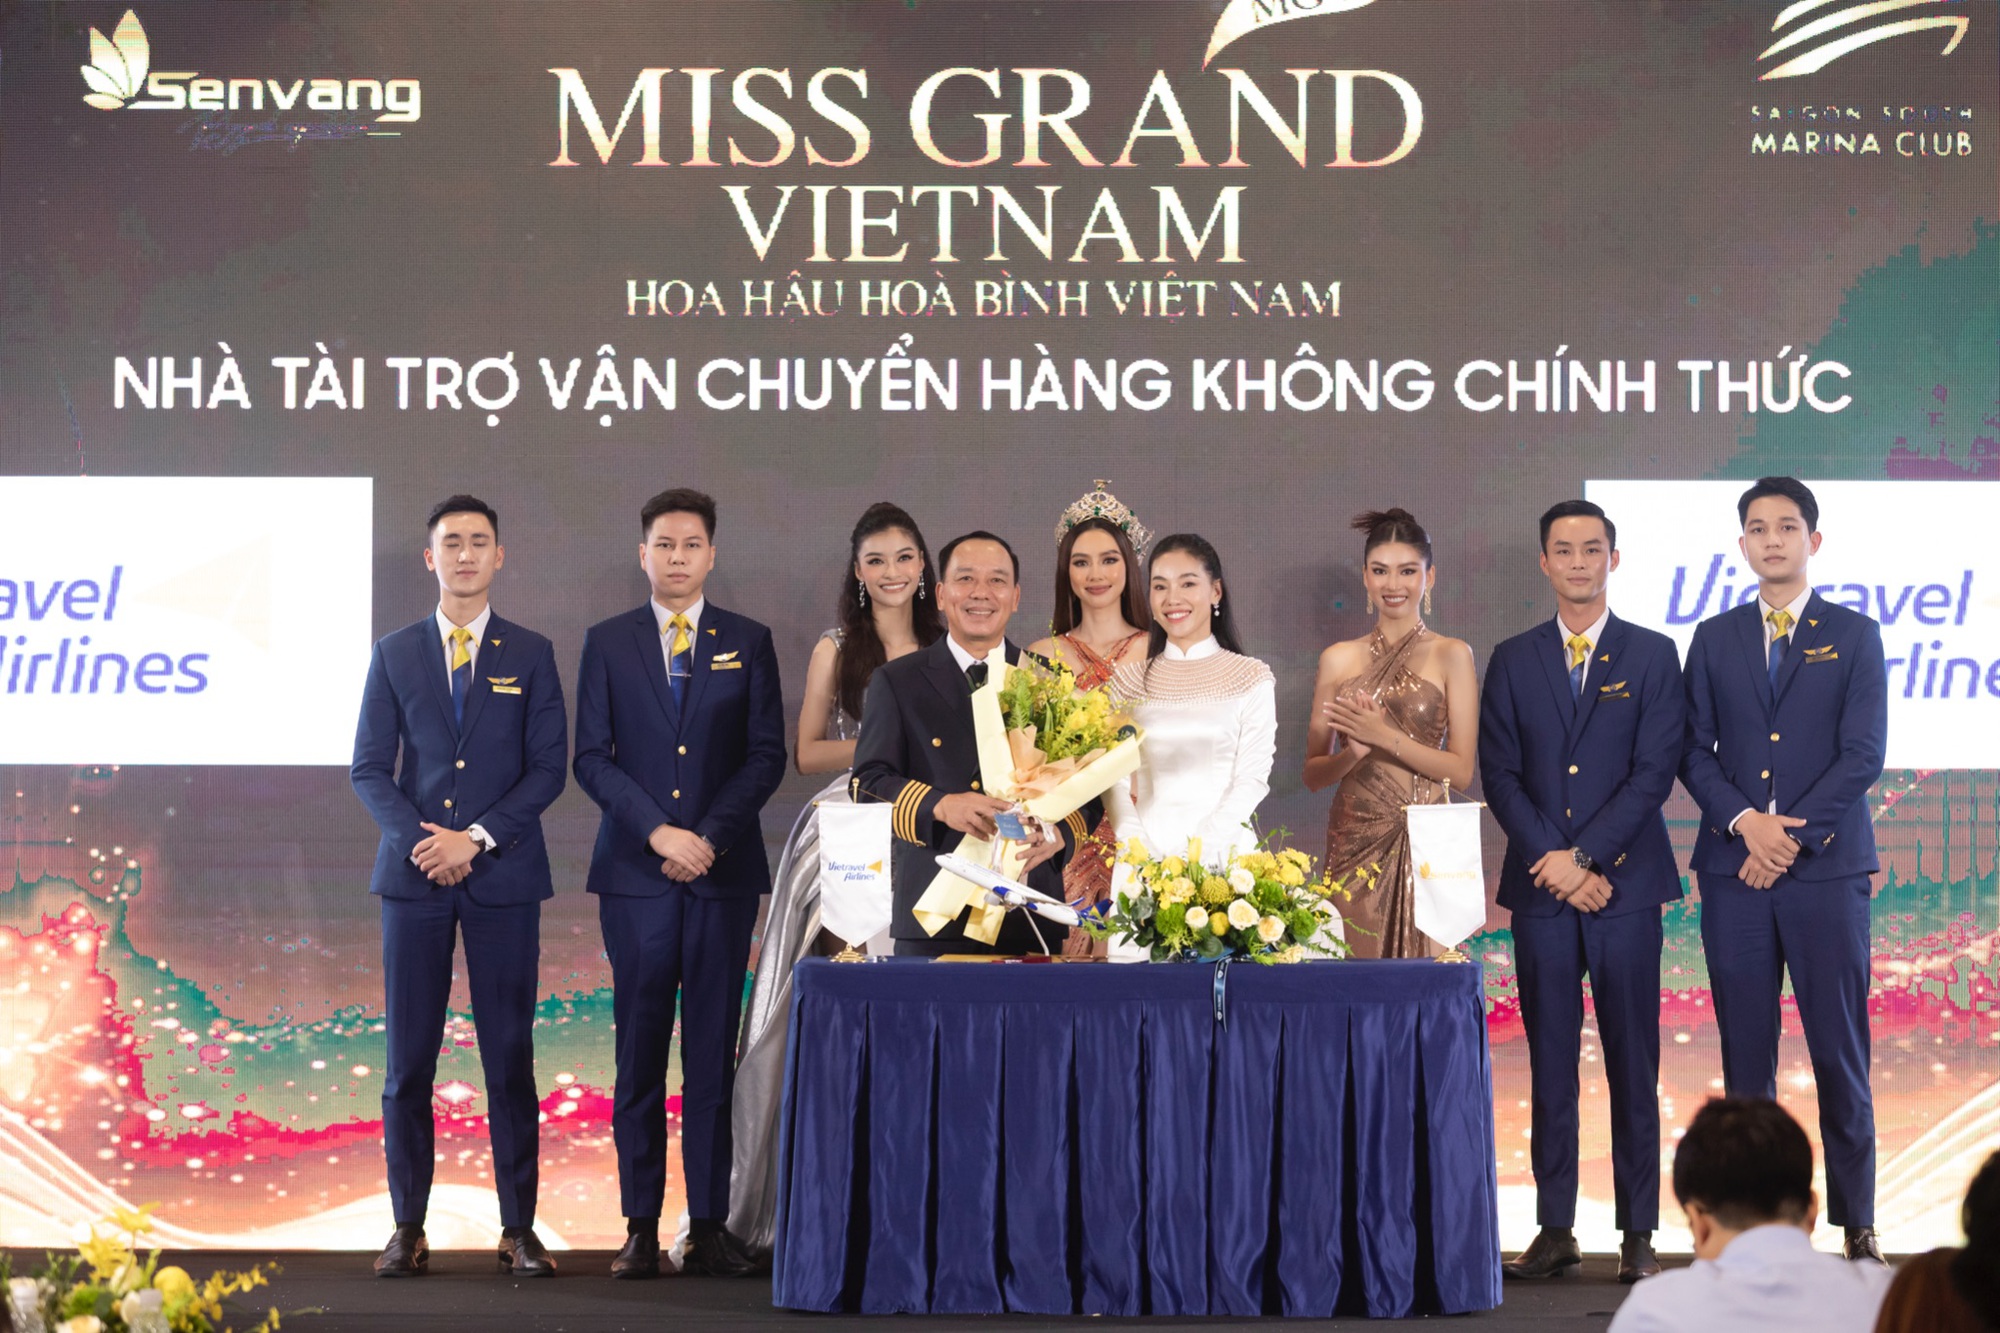 Vietravel Airlines - Đơn vị vận chuyển hàng không chính thức Miss Grand Vietnam 2022 - Ảnh 1.